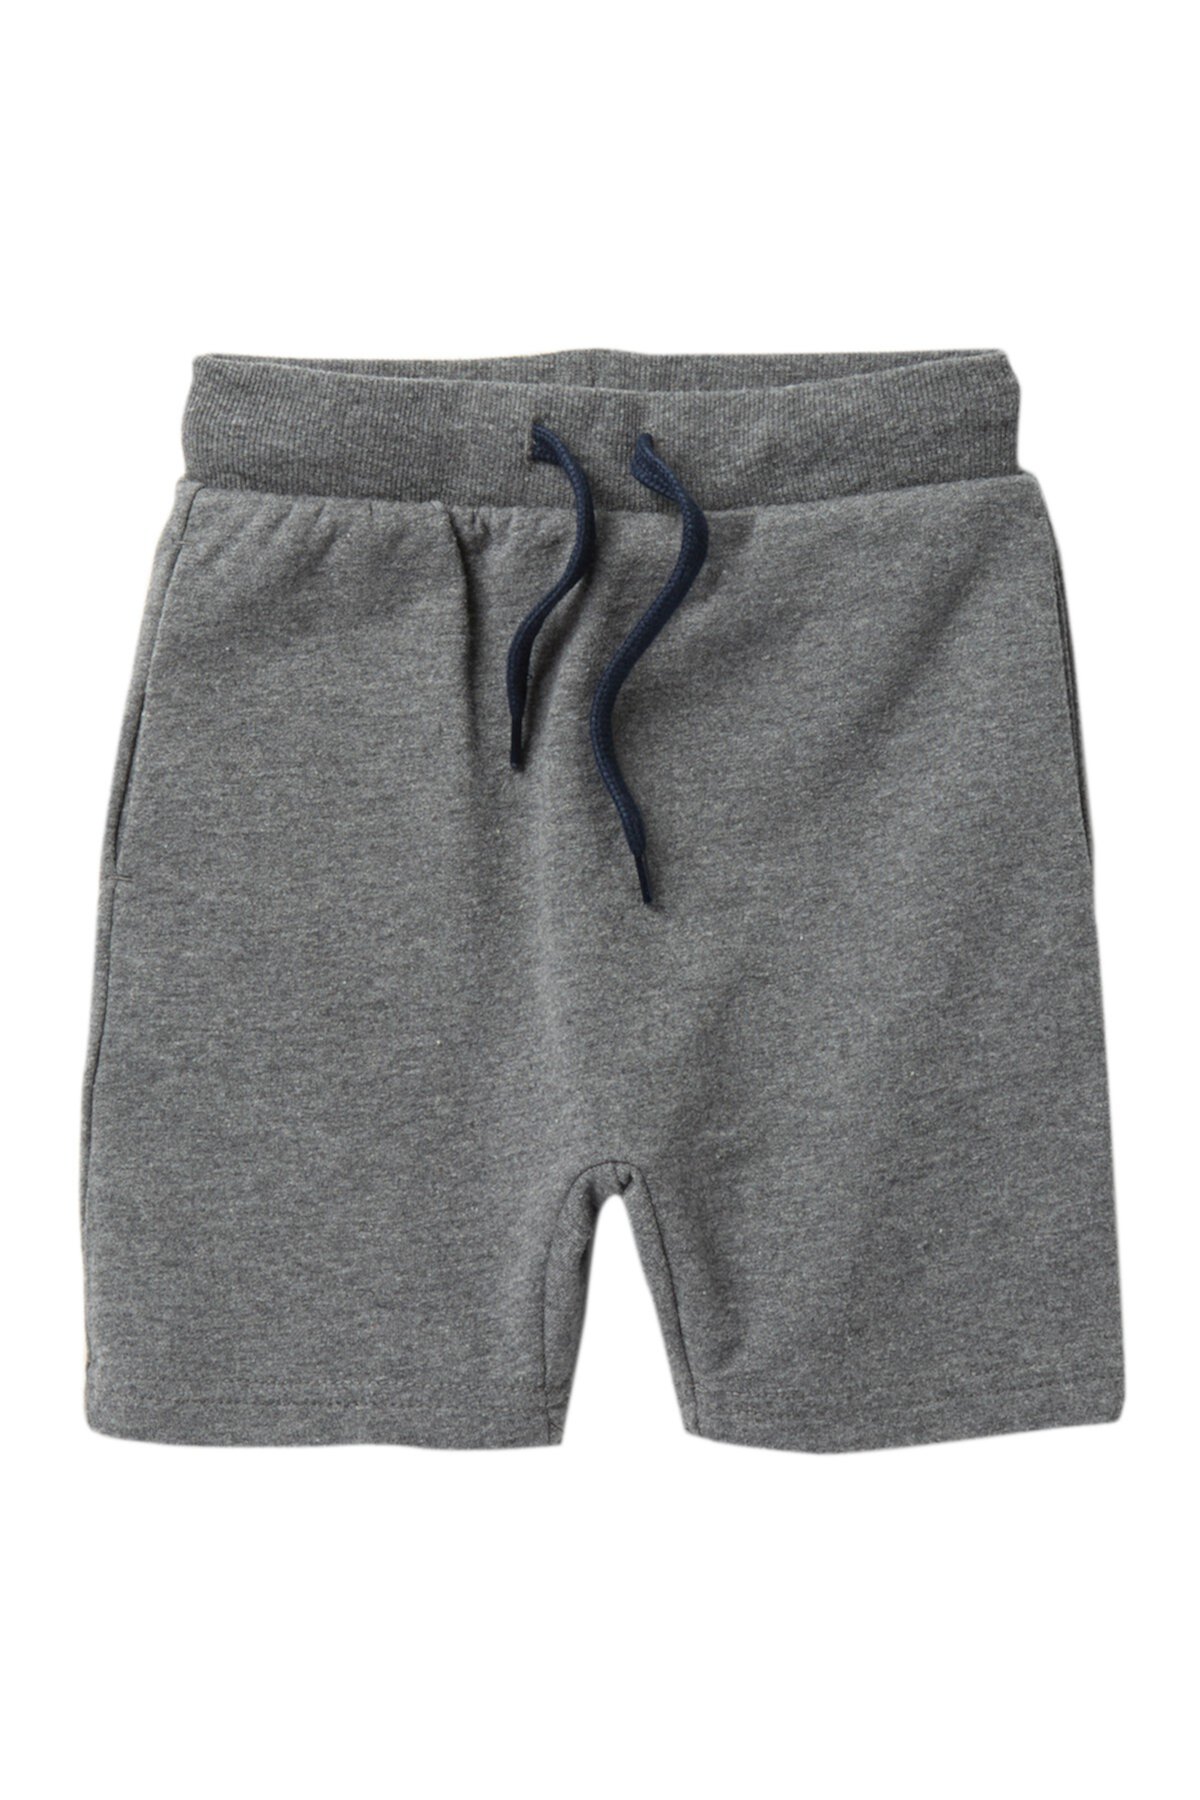 Fry Knit Shorts (Toddler, Little Boys, & Big Boys) Petit Lem